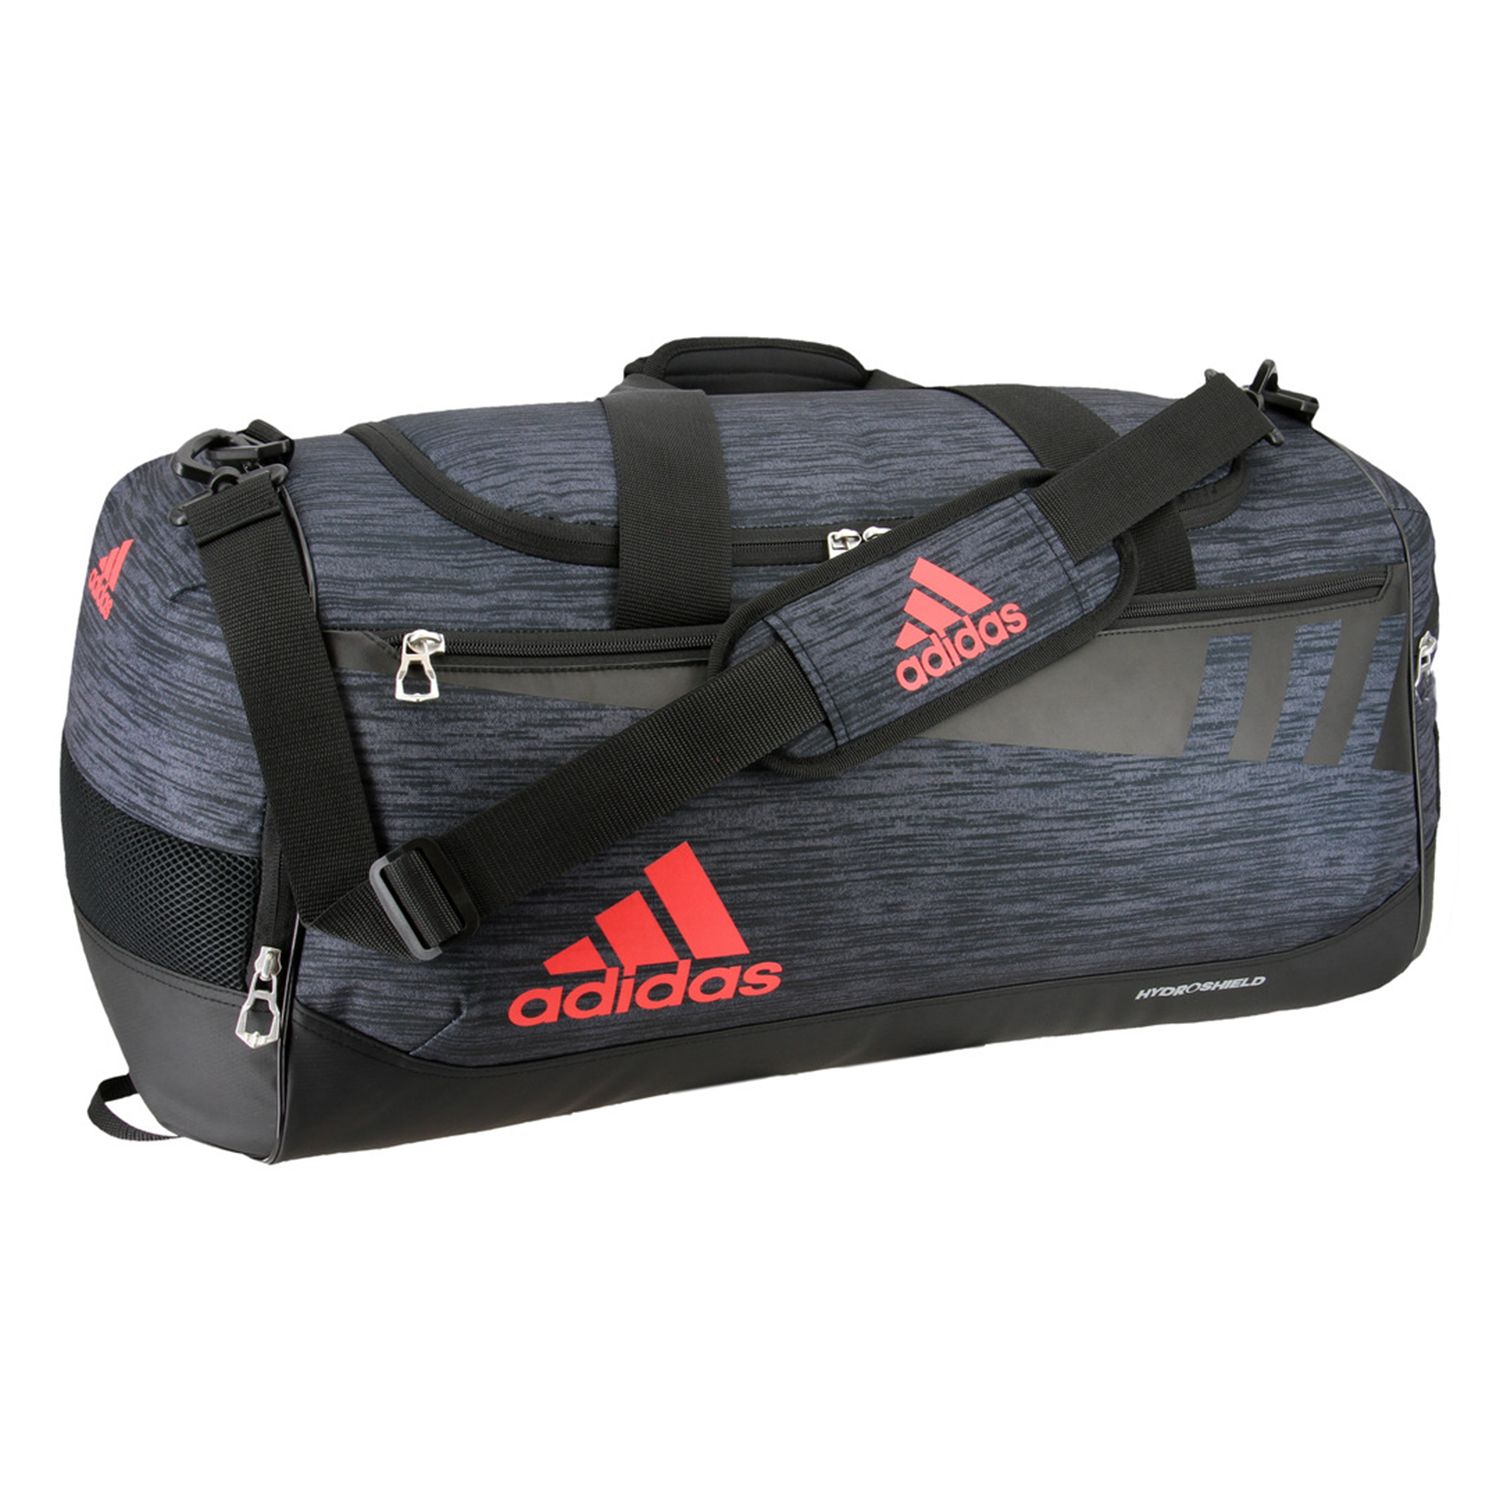 adidas team issue duffel bag small